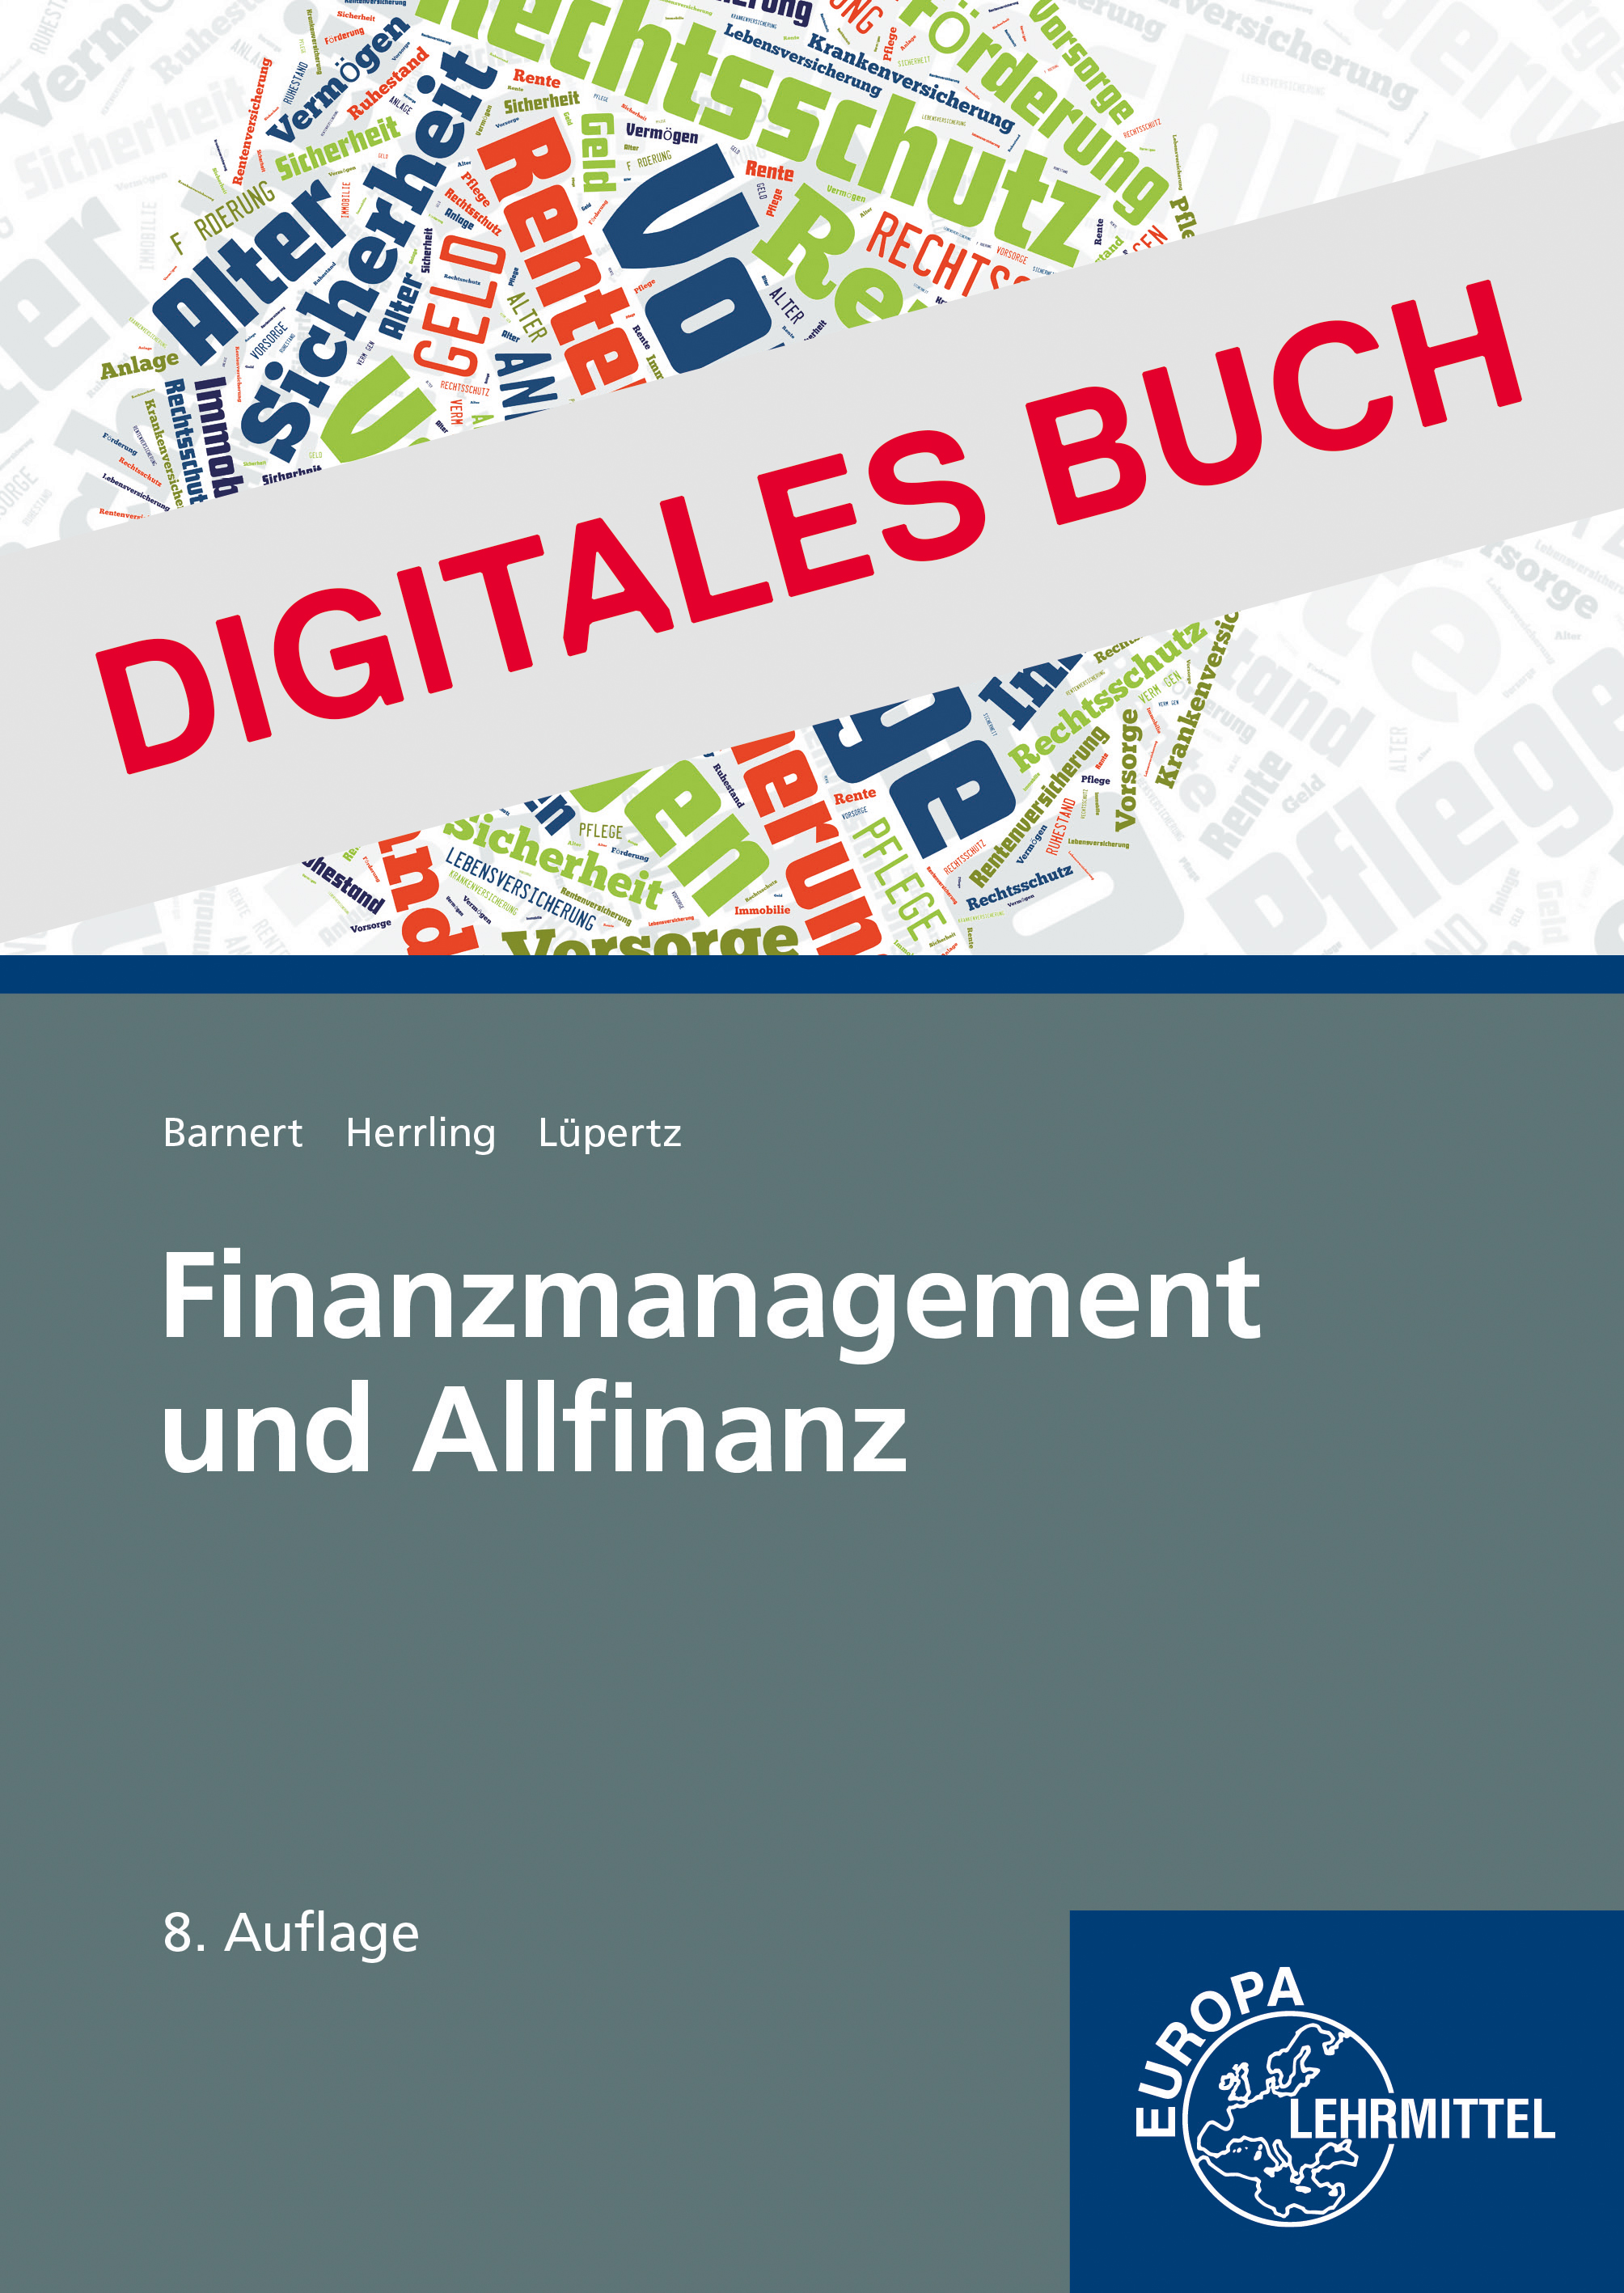 Finanzmanagement und Allfinanz - Digitales Buch